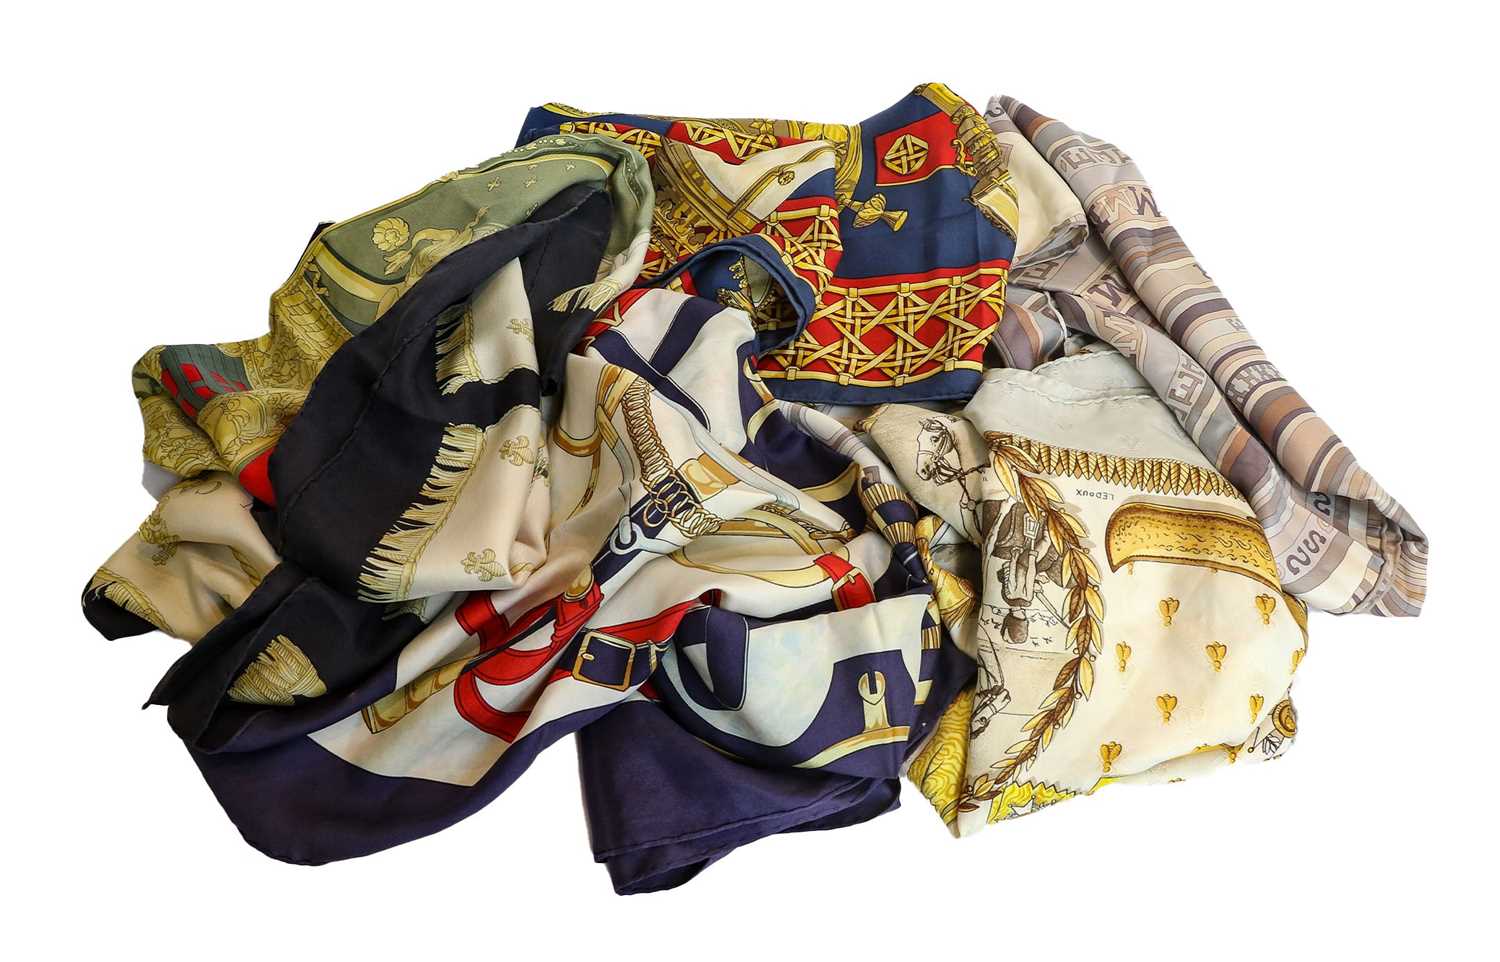 Hermes silk scarves, Feu de Route, Vue du Carosse de la Gallere la Reale, Napoleon with woven bees